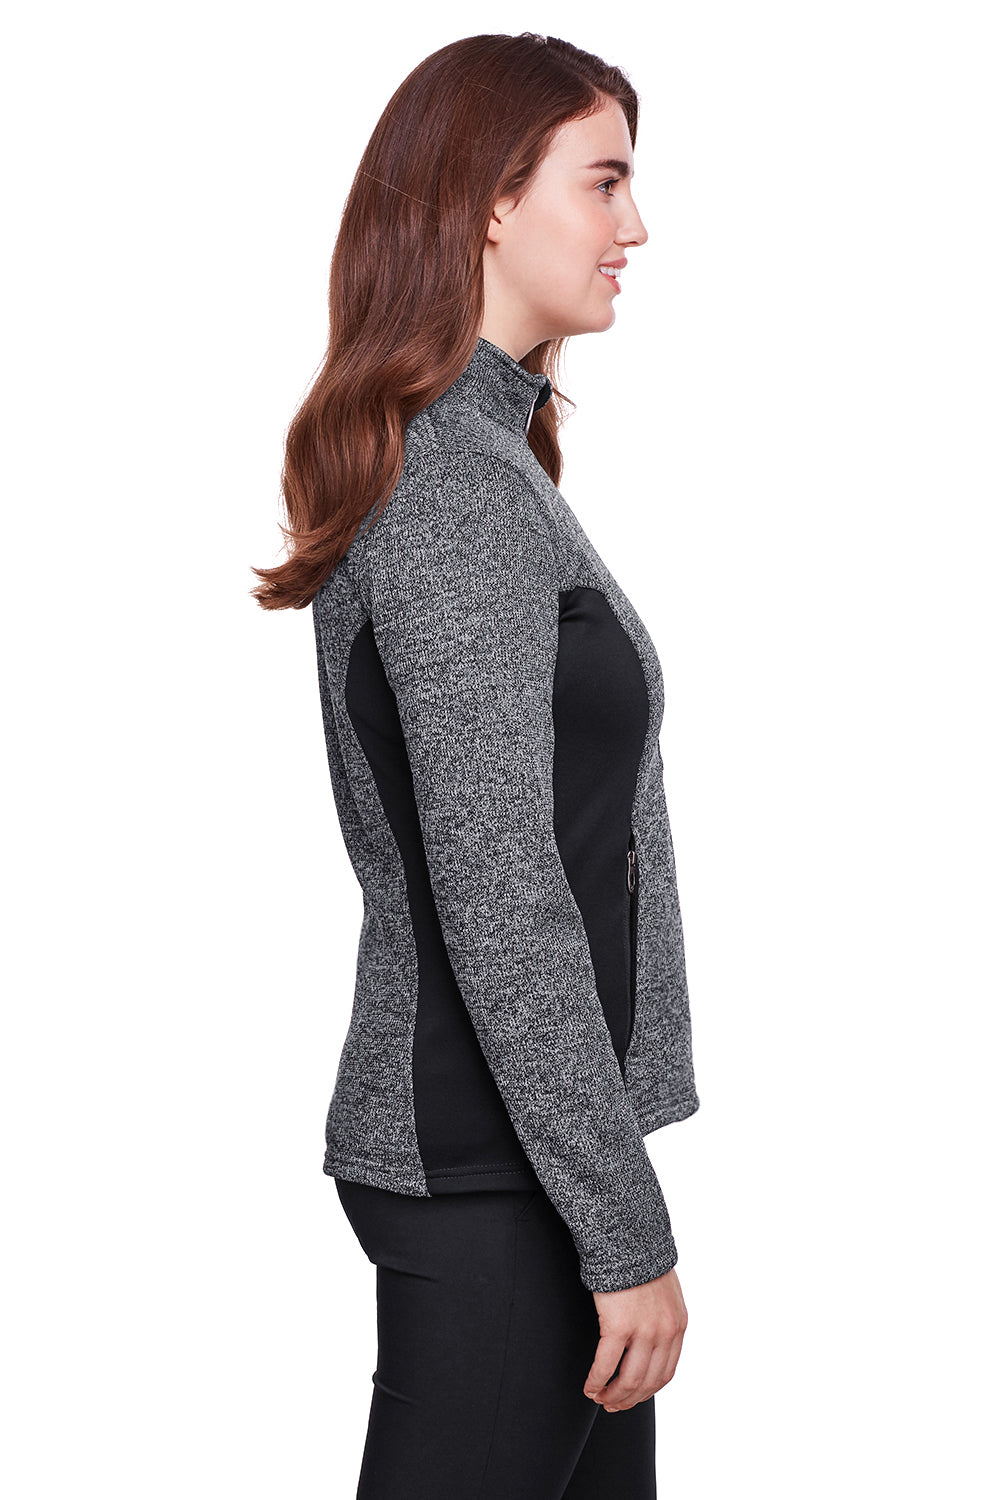 Spyder 187335 Constant Full Zip Sweater Fleece Jacket Heather Black Side